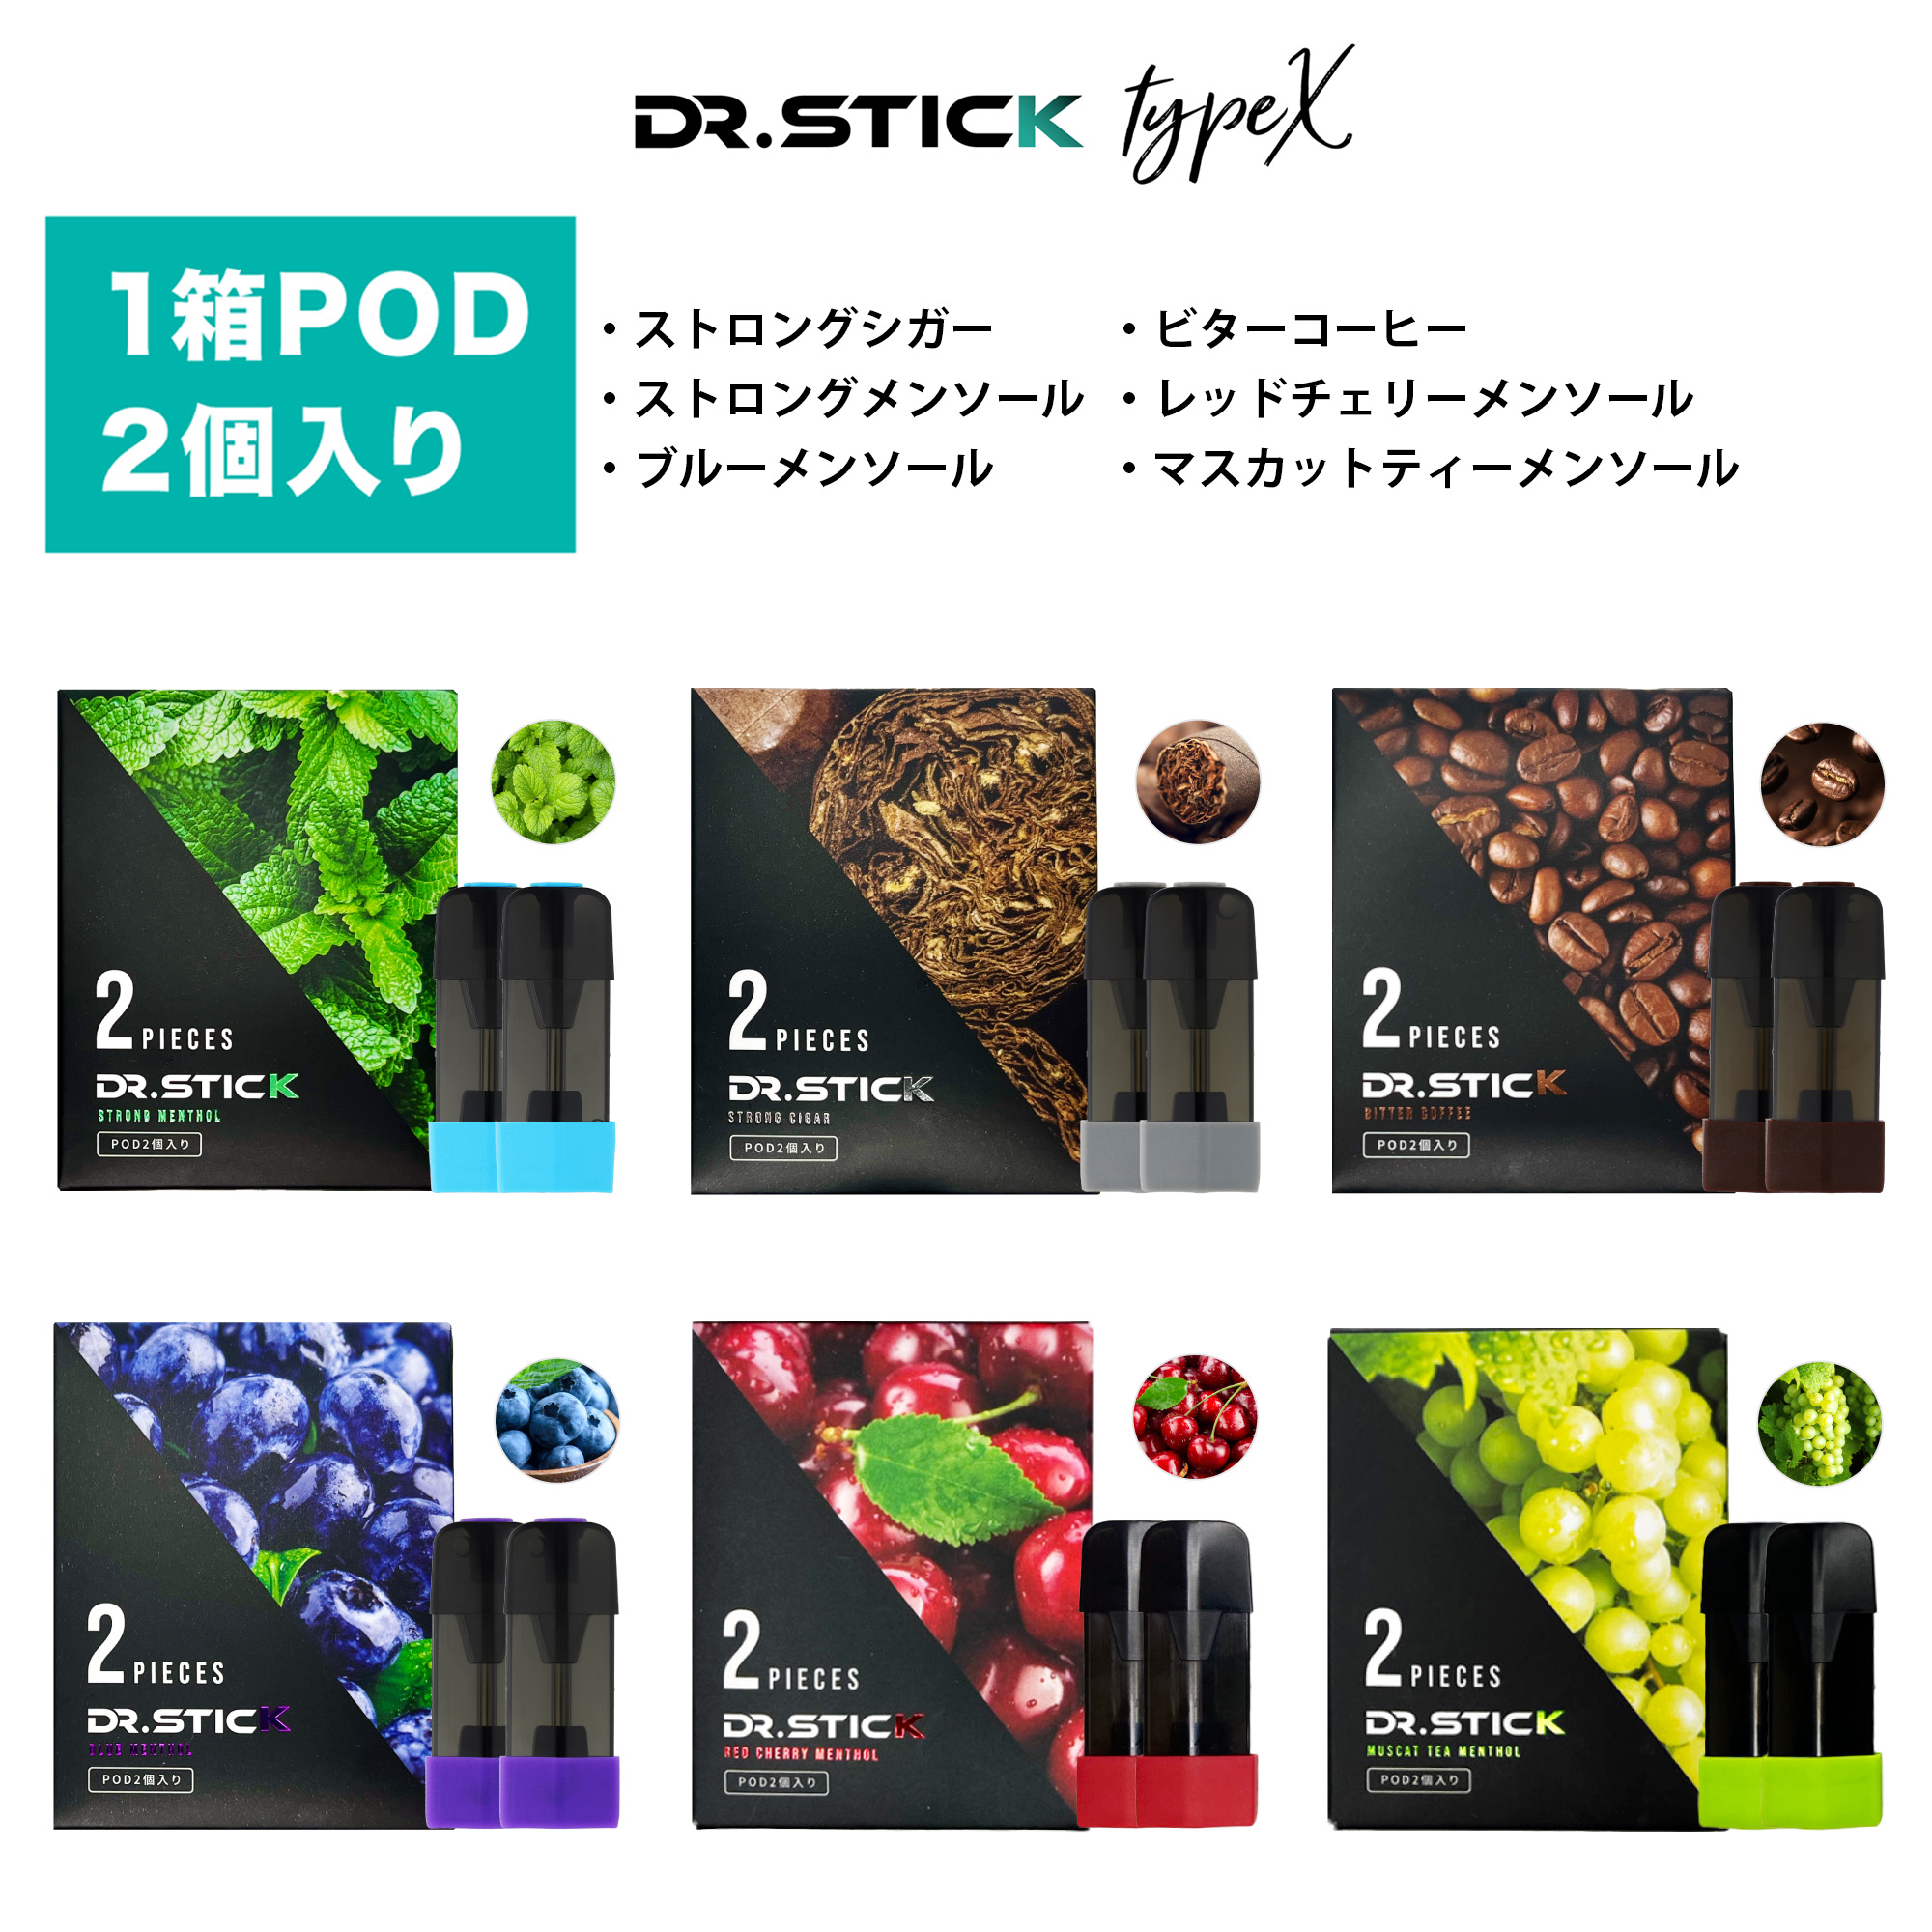 shop.r10s.jp/drstick-shop/cabinet/drstick-typex/6f...